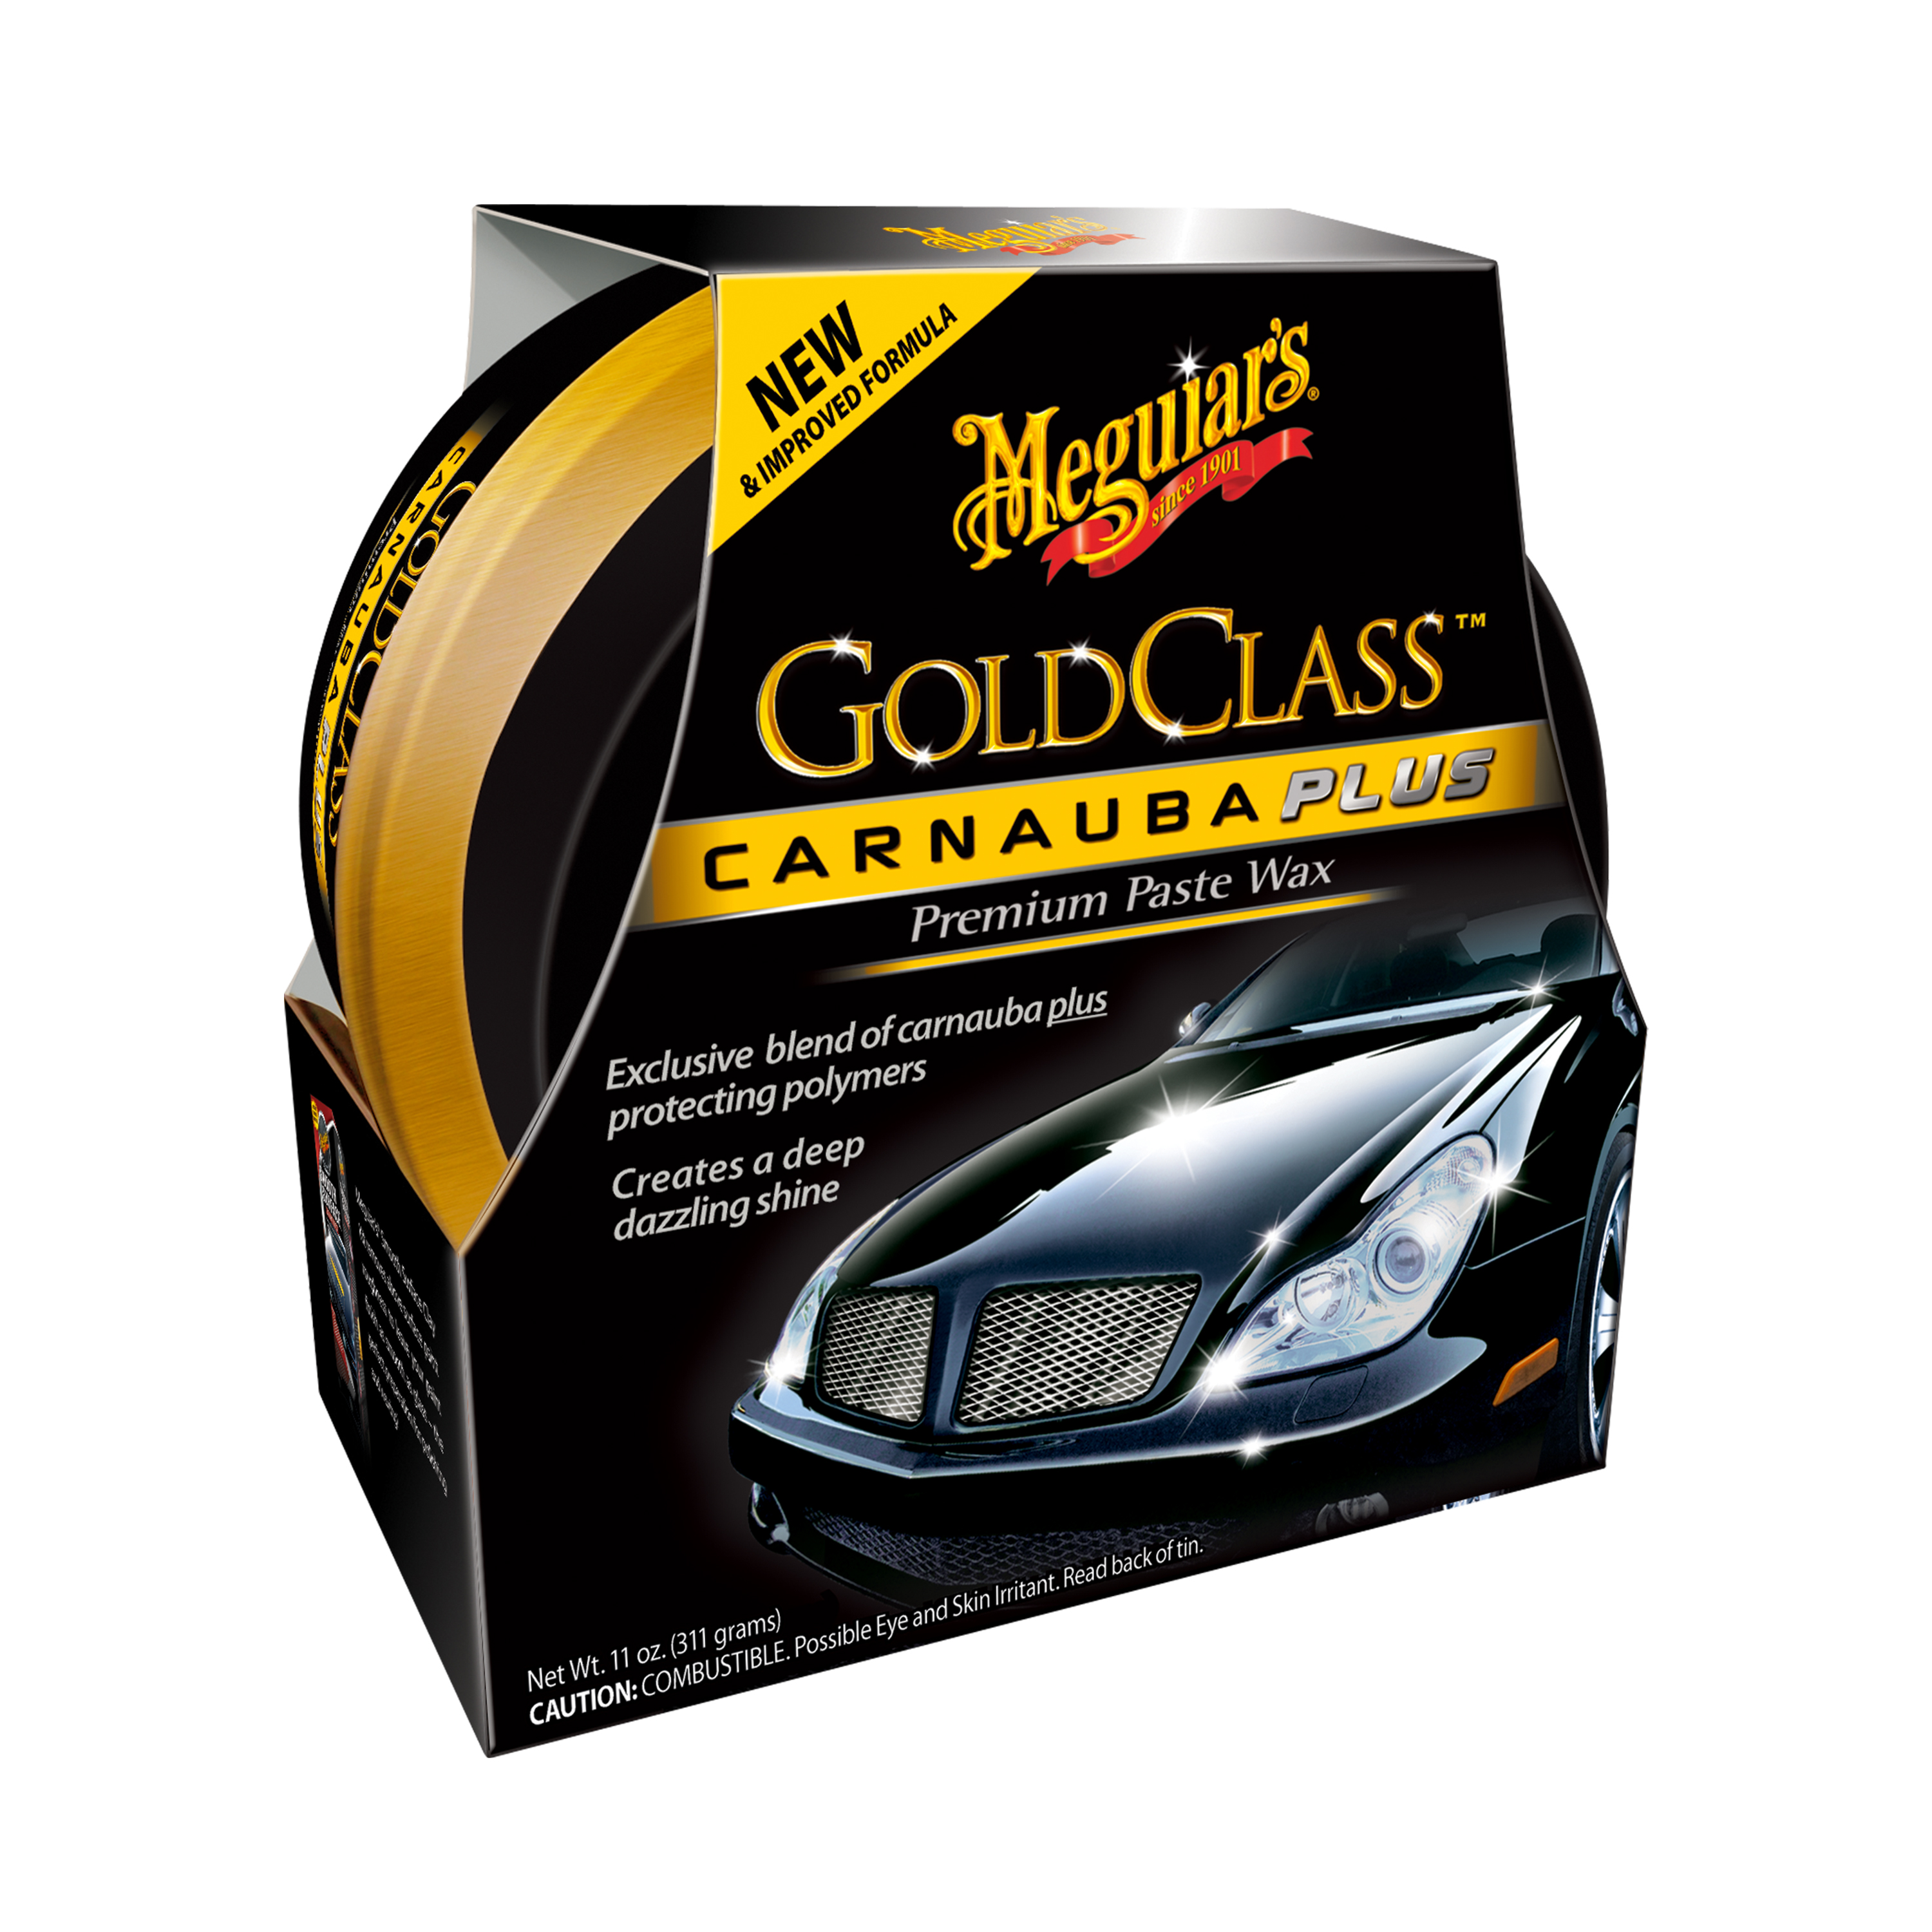 Meguiar's Gold Class Carnauba Plus Premium Paste Wax, G7014J, 11 oz - image 1 of 14